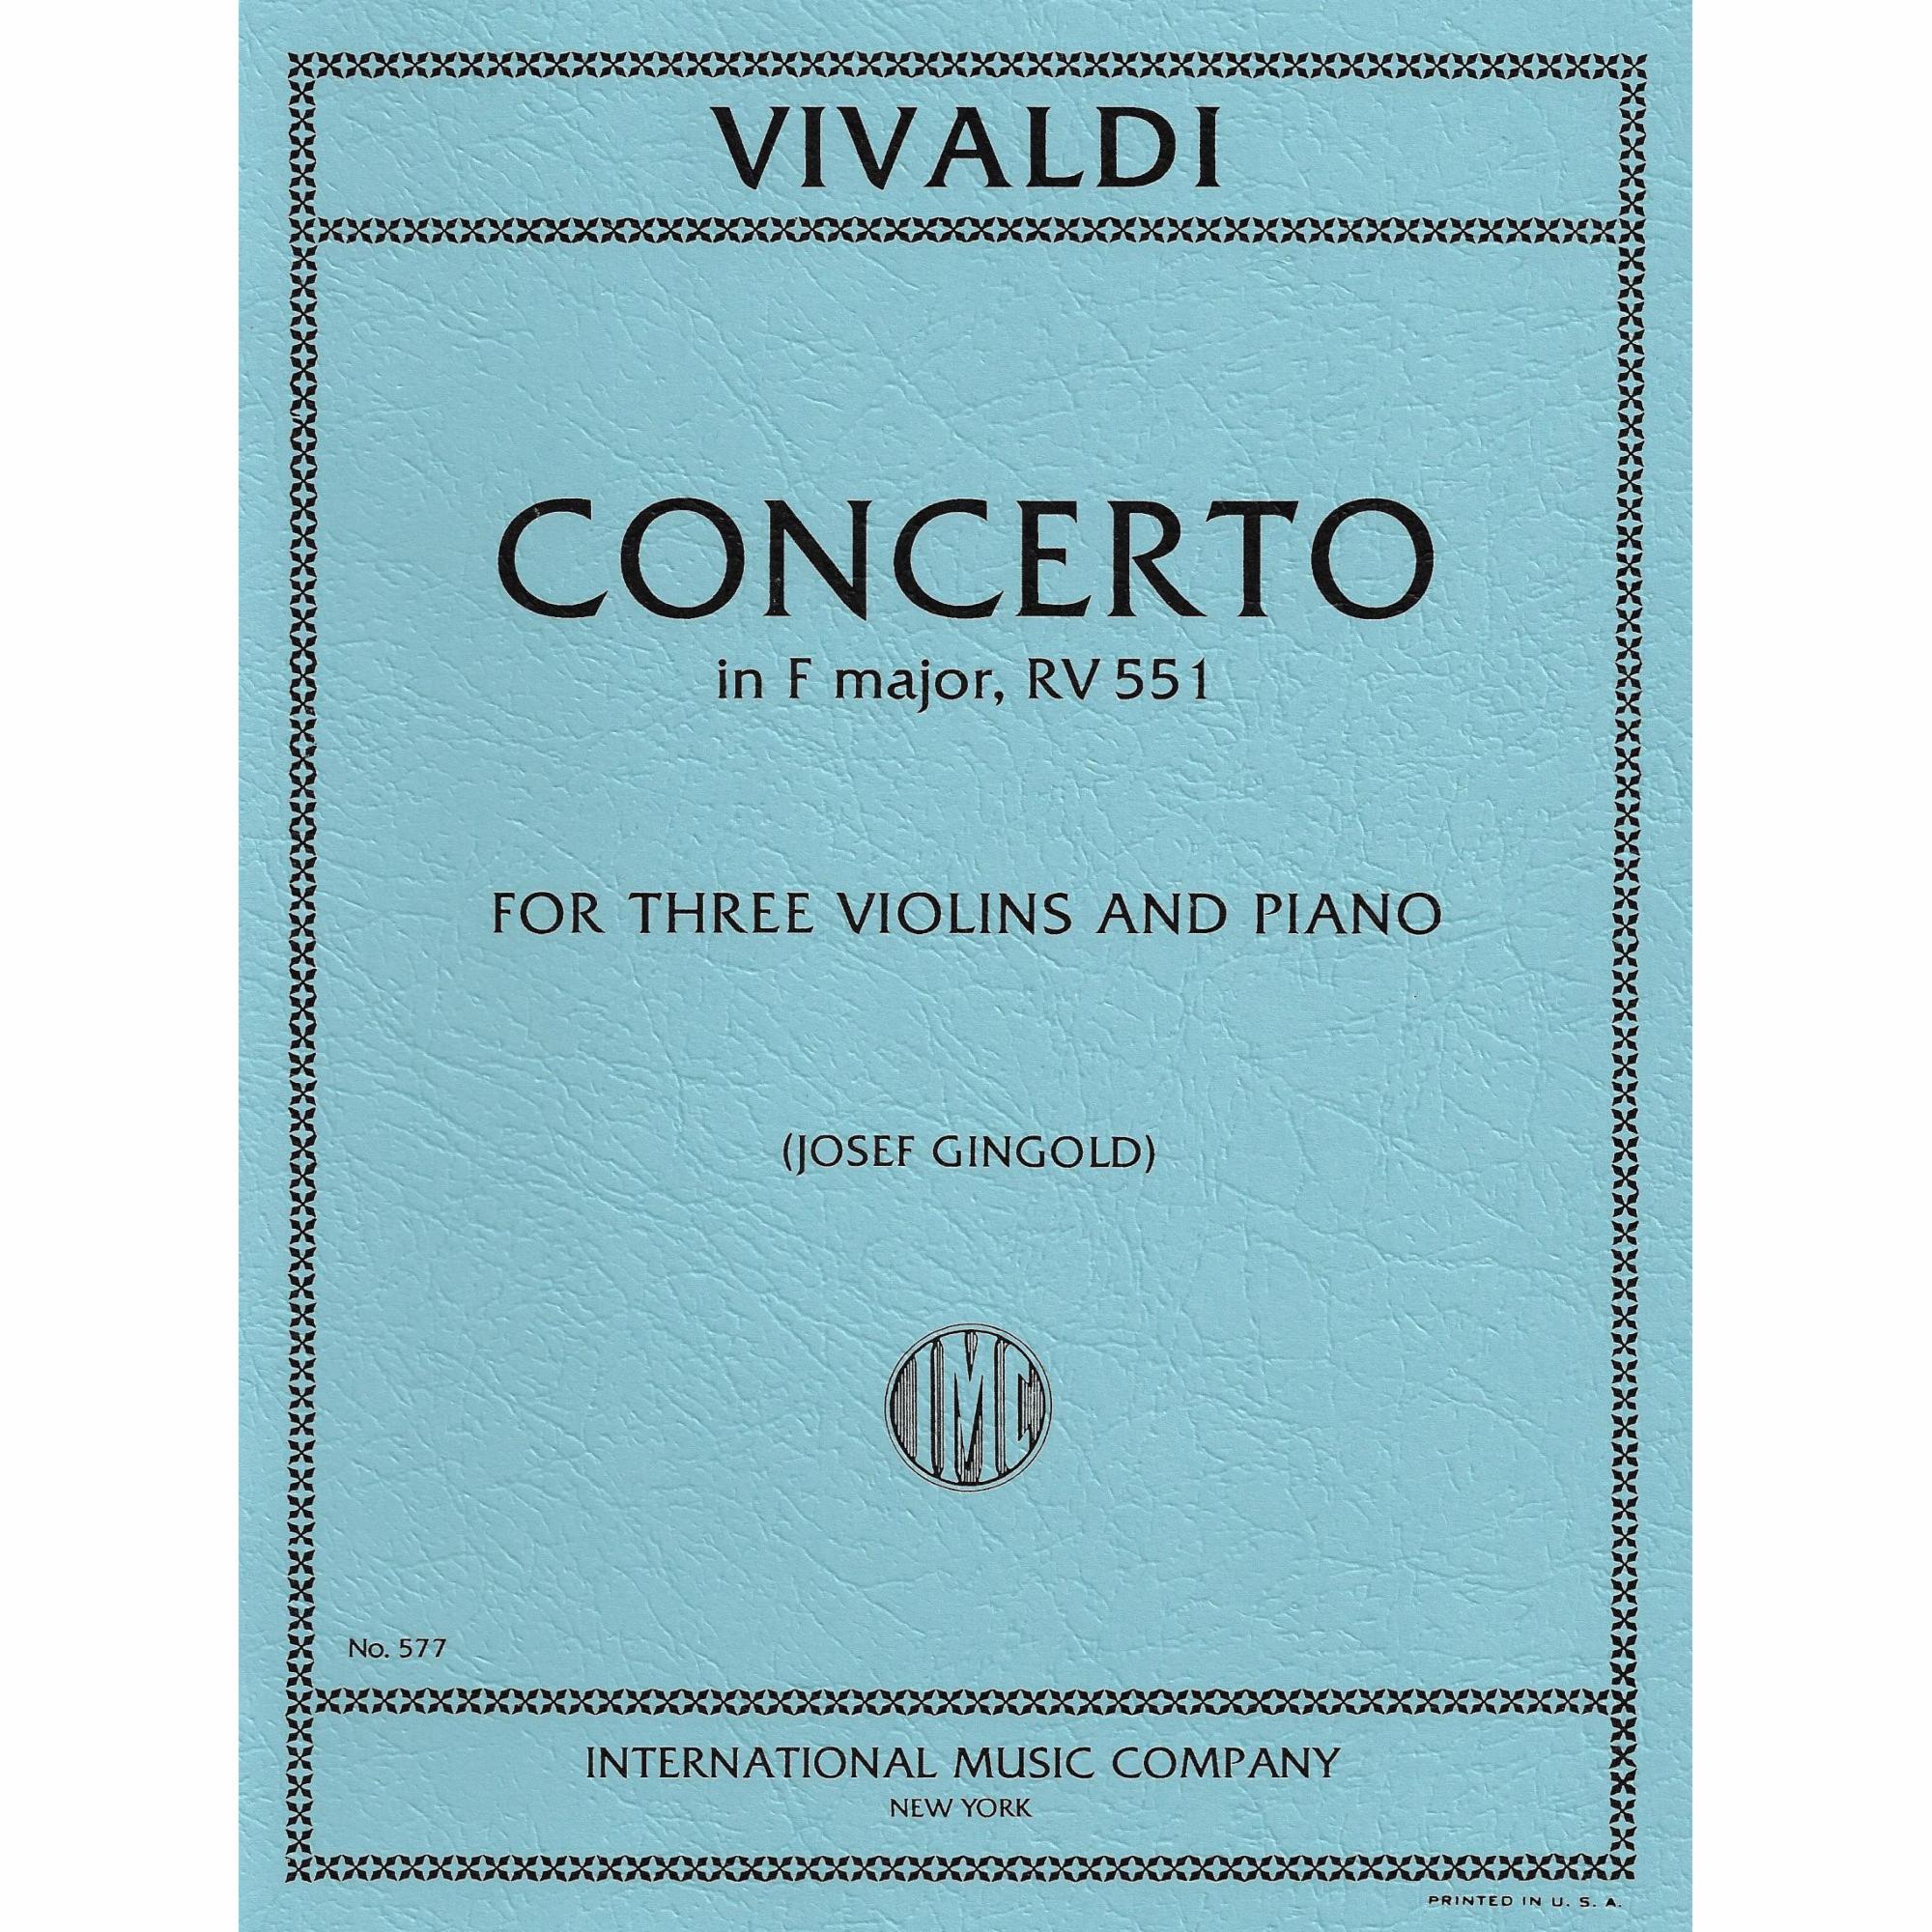 Vivaldi -- Concerto in F Major, RV 551 for Three Violins and Piano